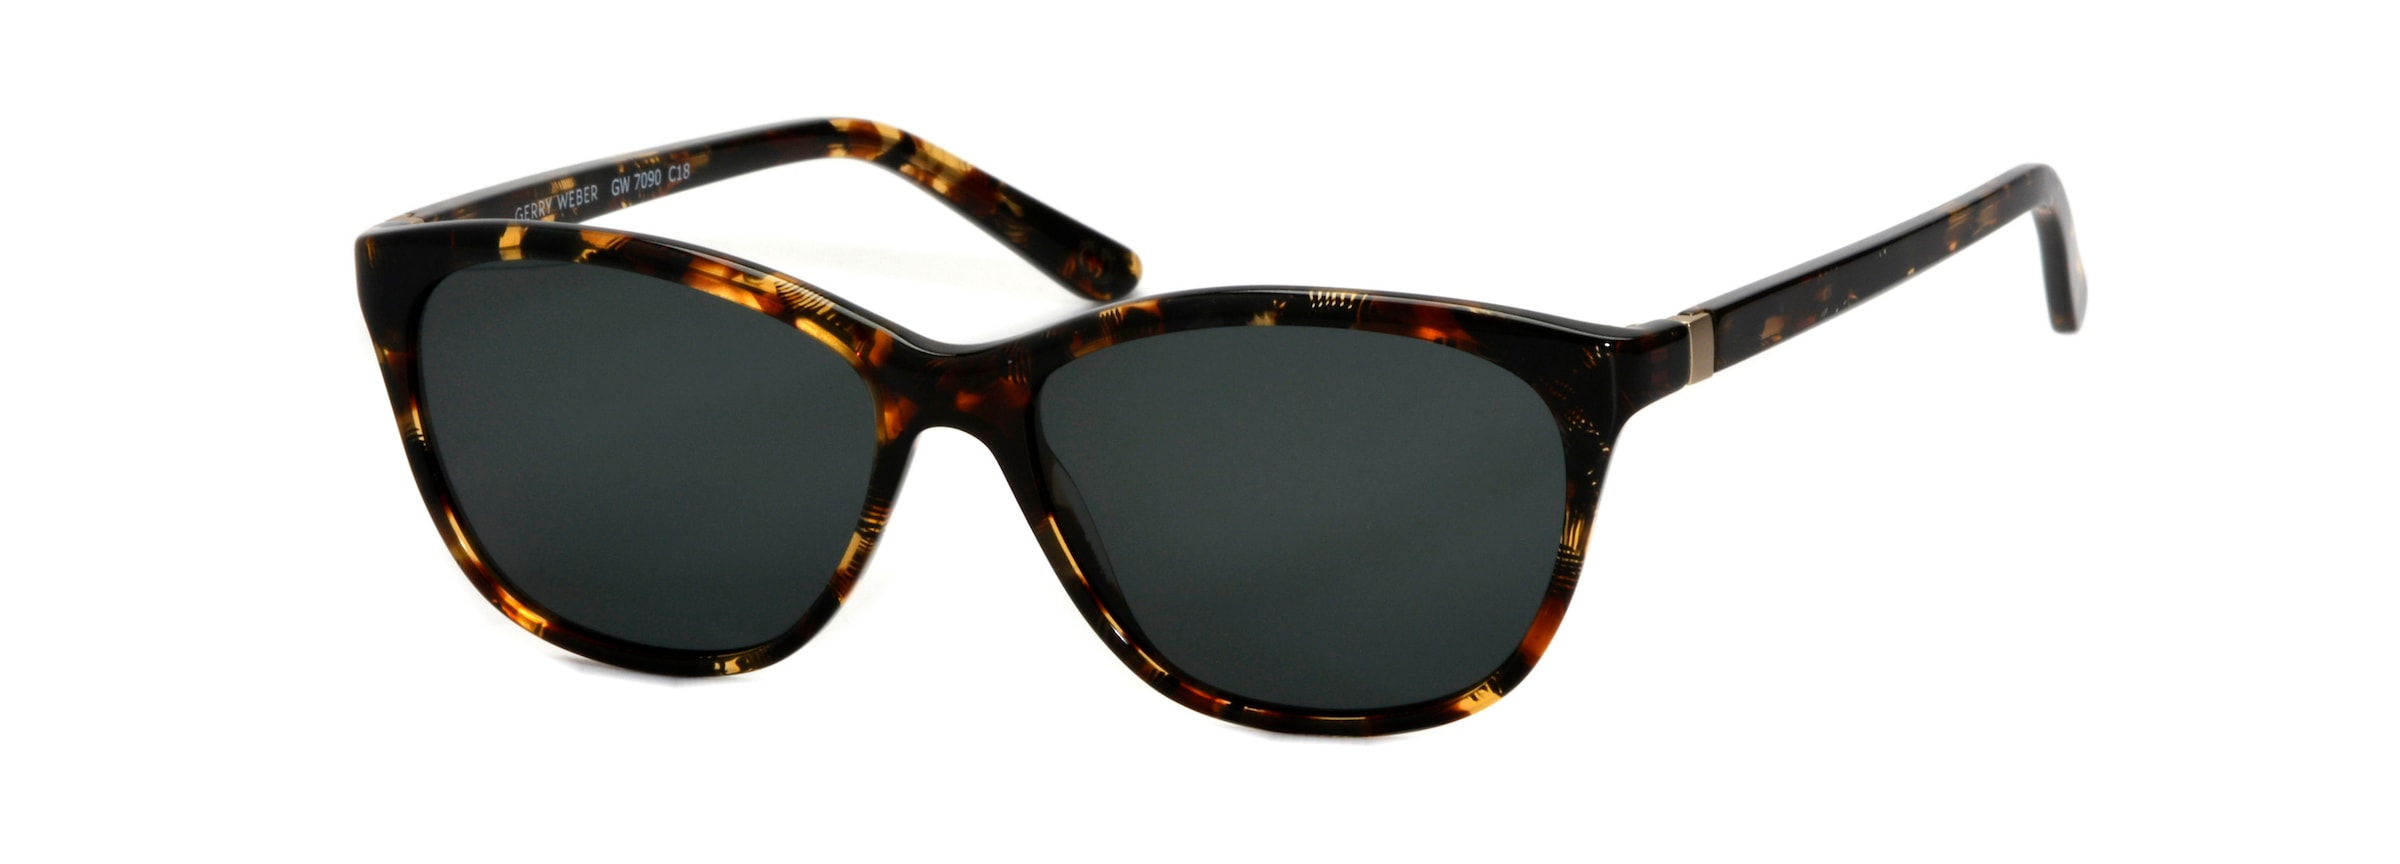 Sonnenbrille, Klassische Damenbrille, Vollrand